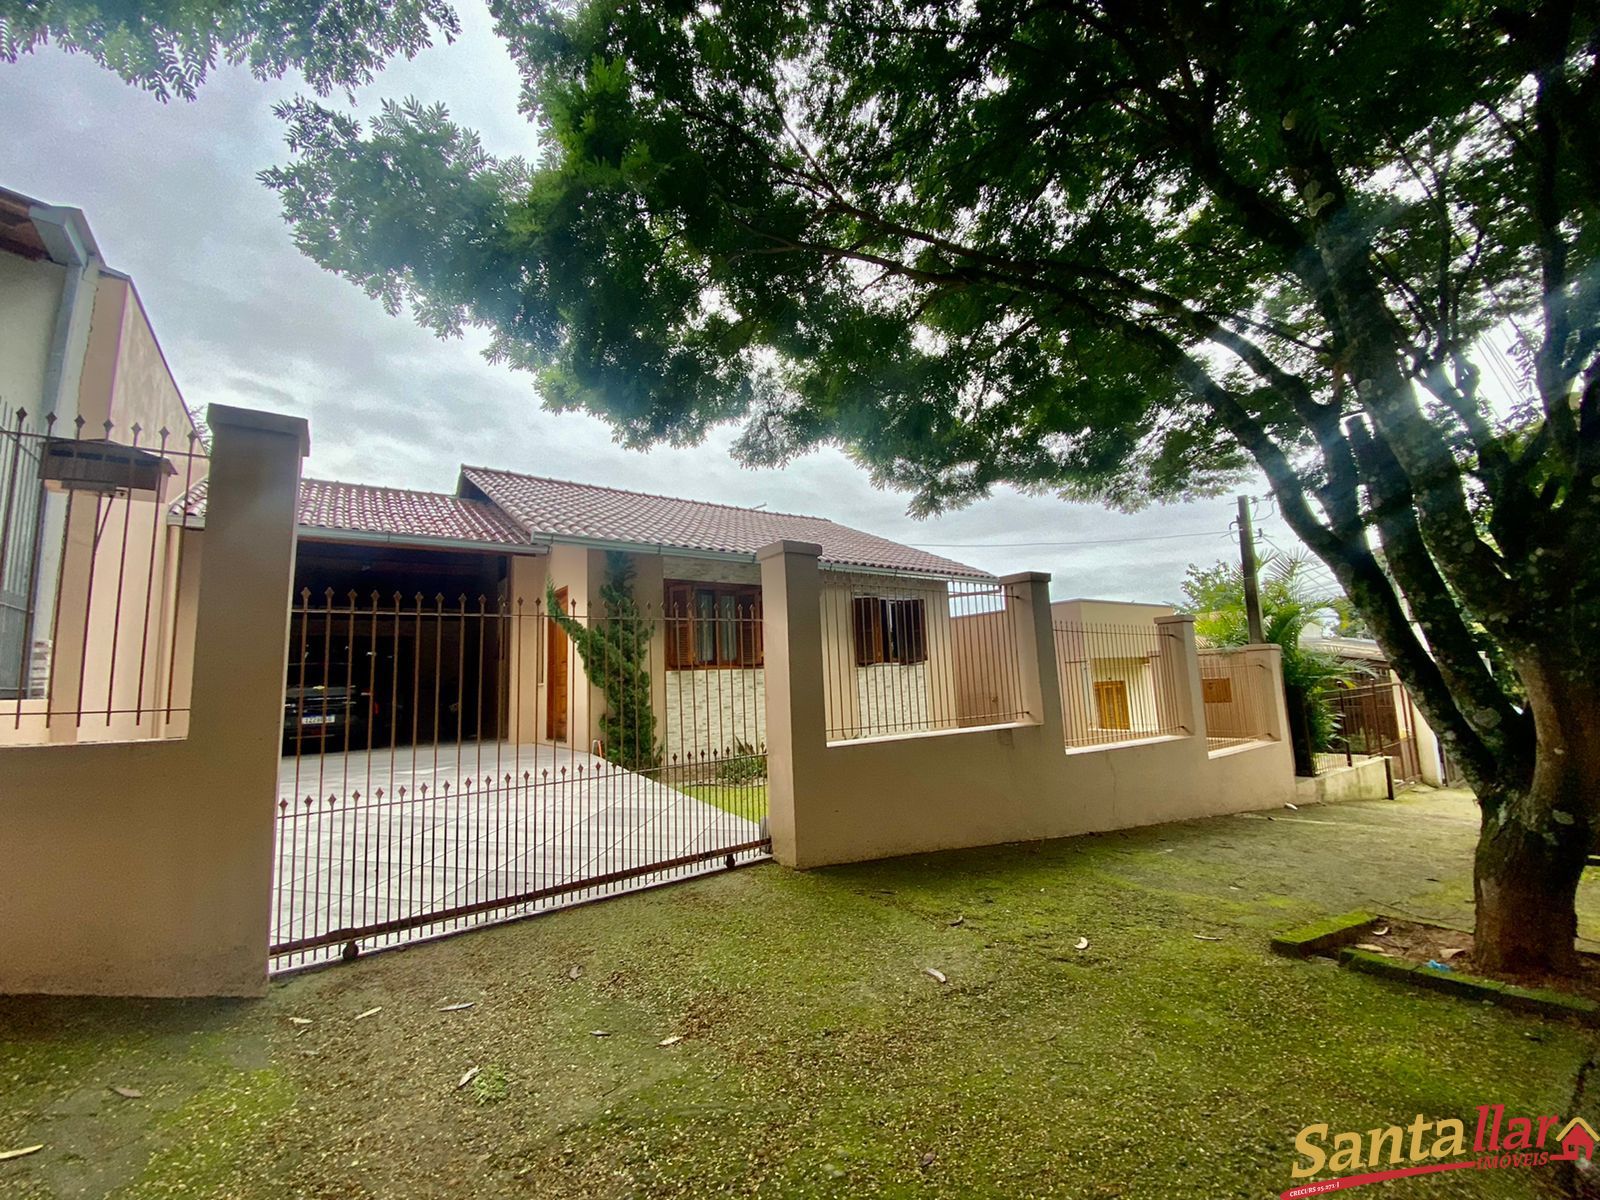 Casa  venda  no Pedreira - Santa Cruz do Sul, RS. Imveis